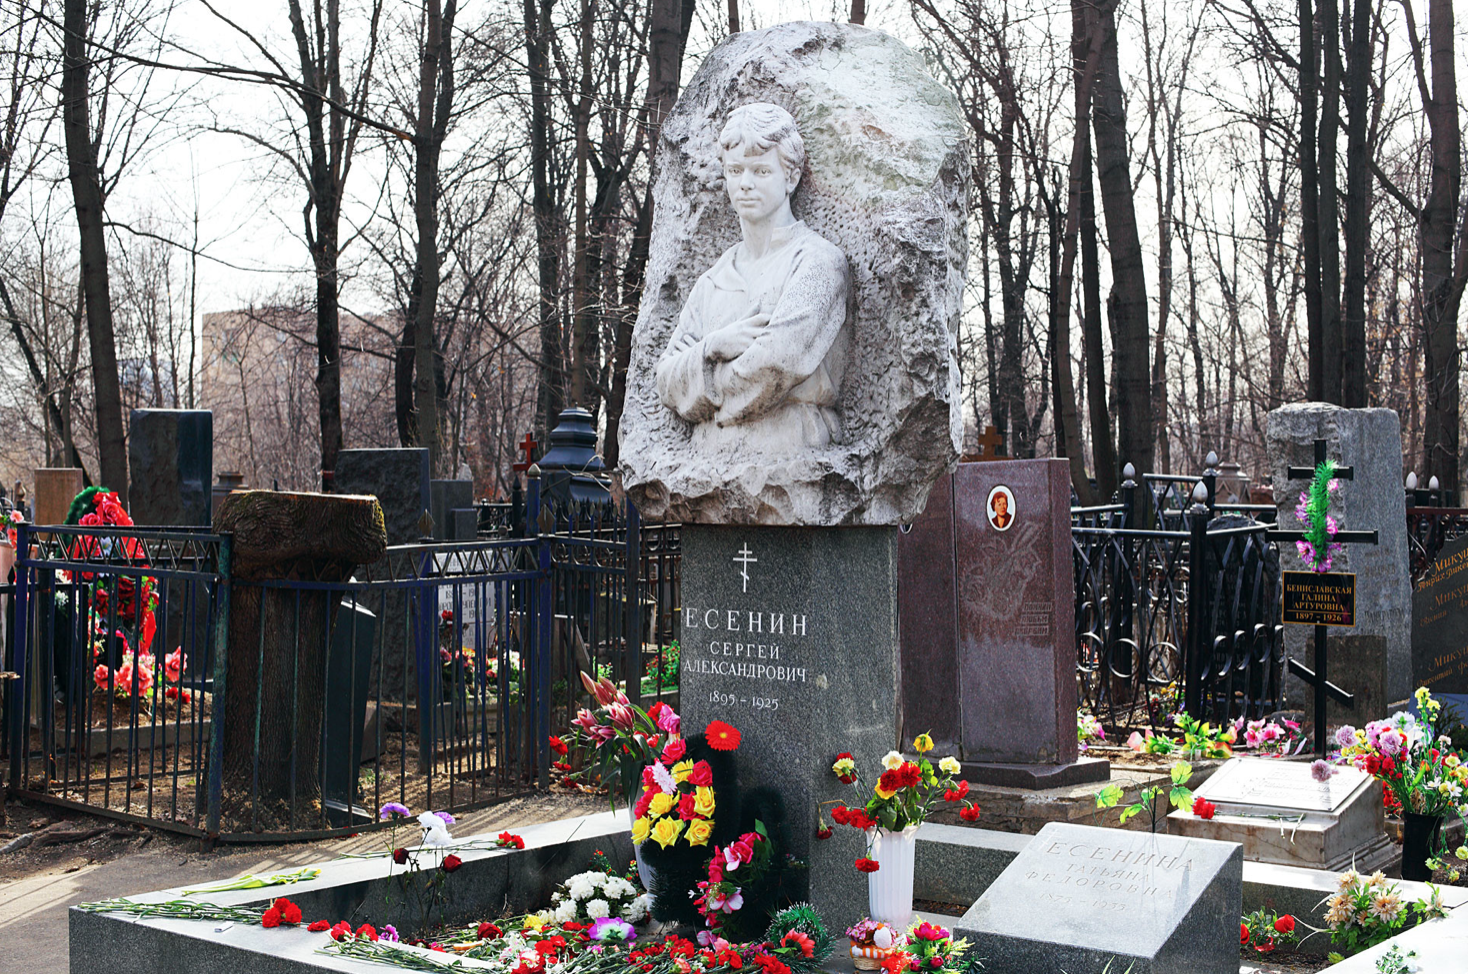 Pierre tombale de Sergueï Essénine au cimetière Vagankovo. La croix noire sur le côté gauche se trouve sur la tombe de Galina Benislavskaïa.